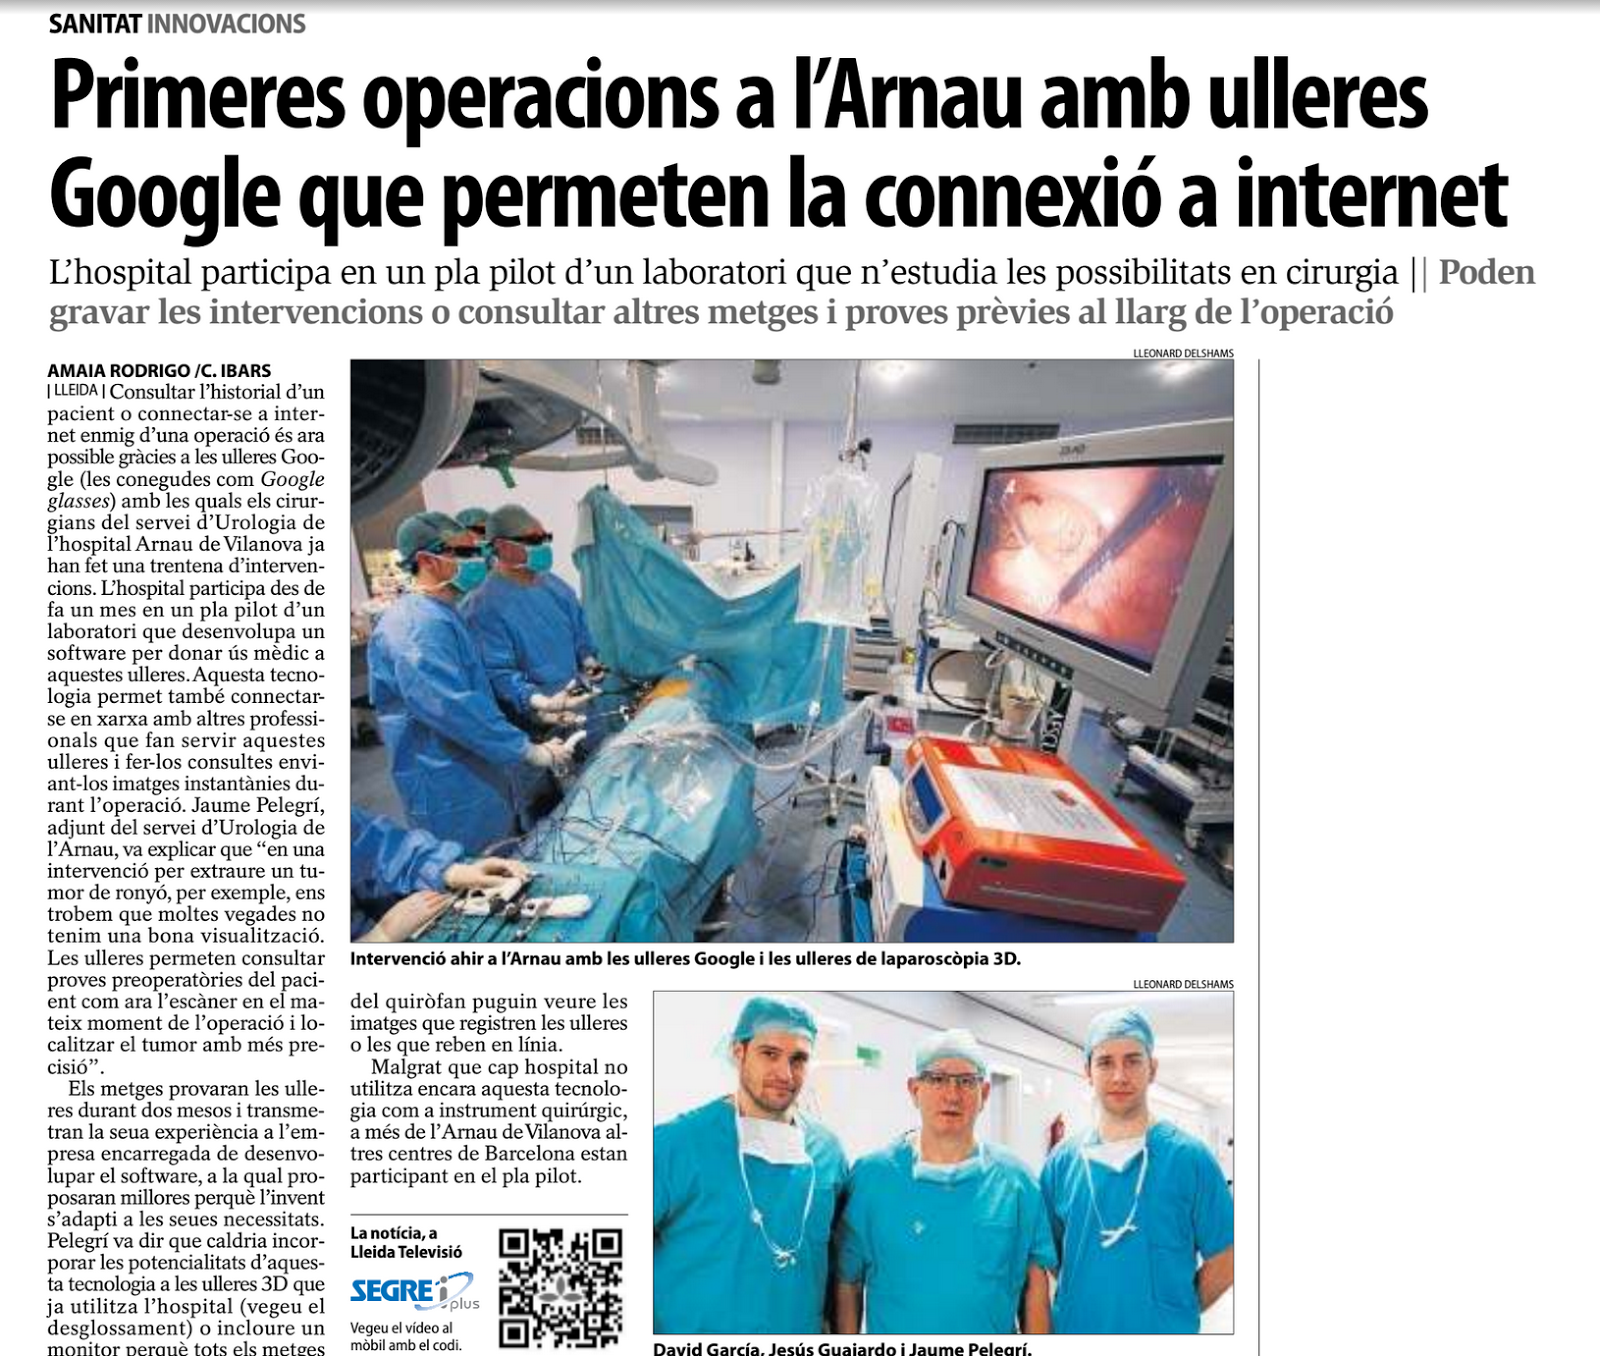 Las #GoogleGlass no están paradas, y si no miren el uso en cirugía que se les dá en #lleida